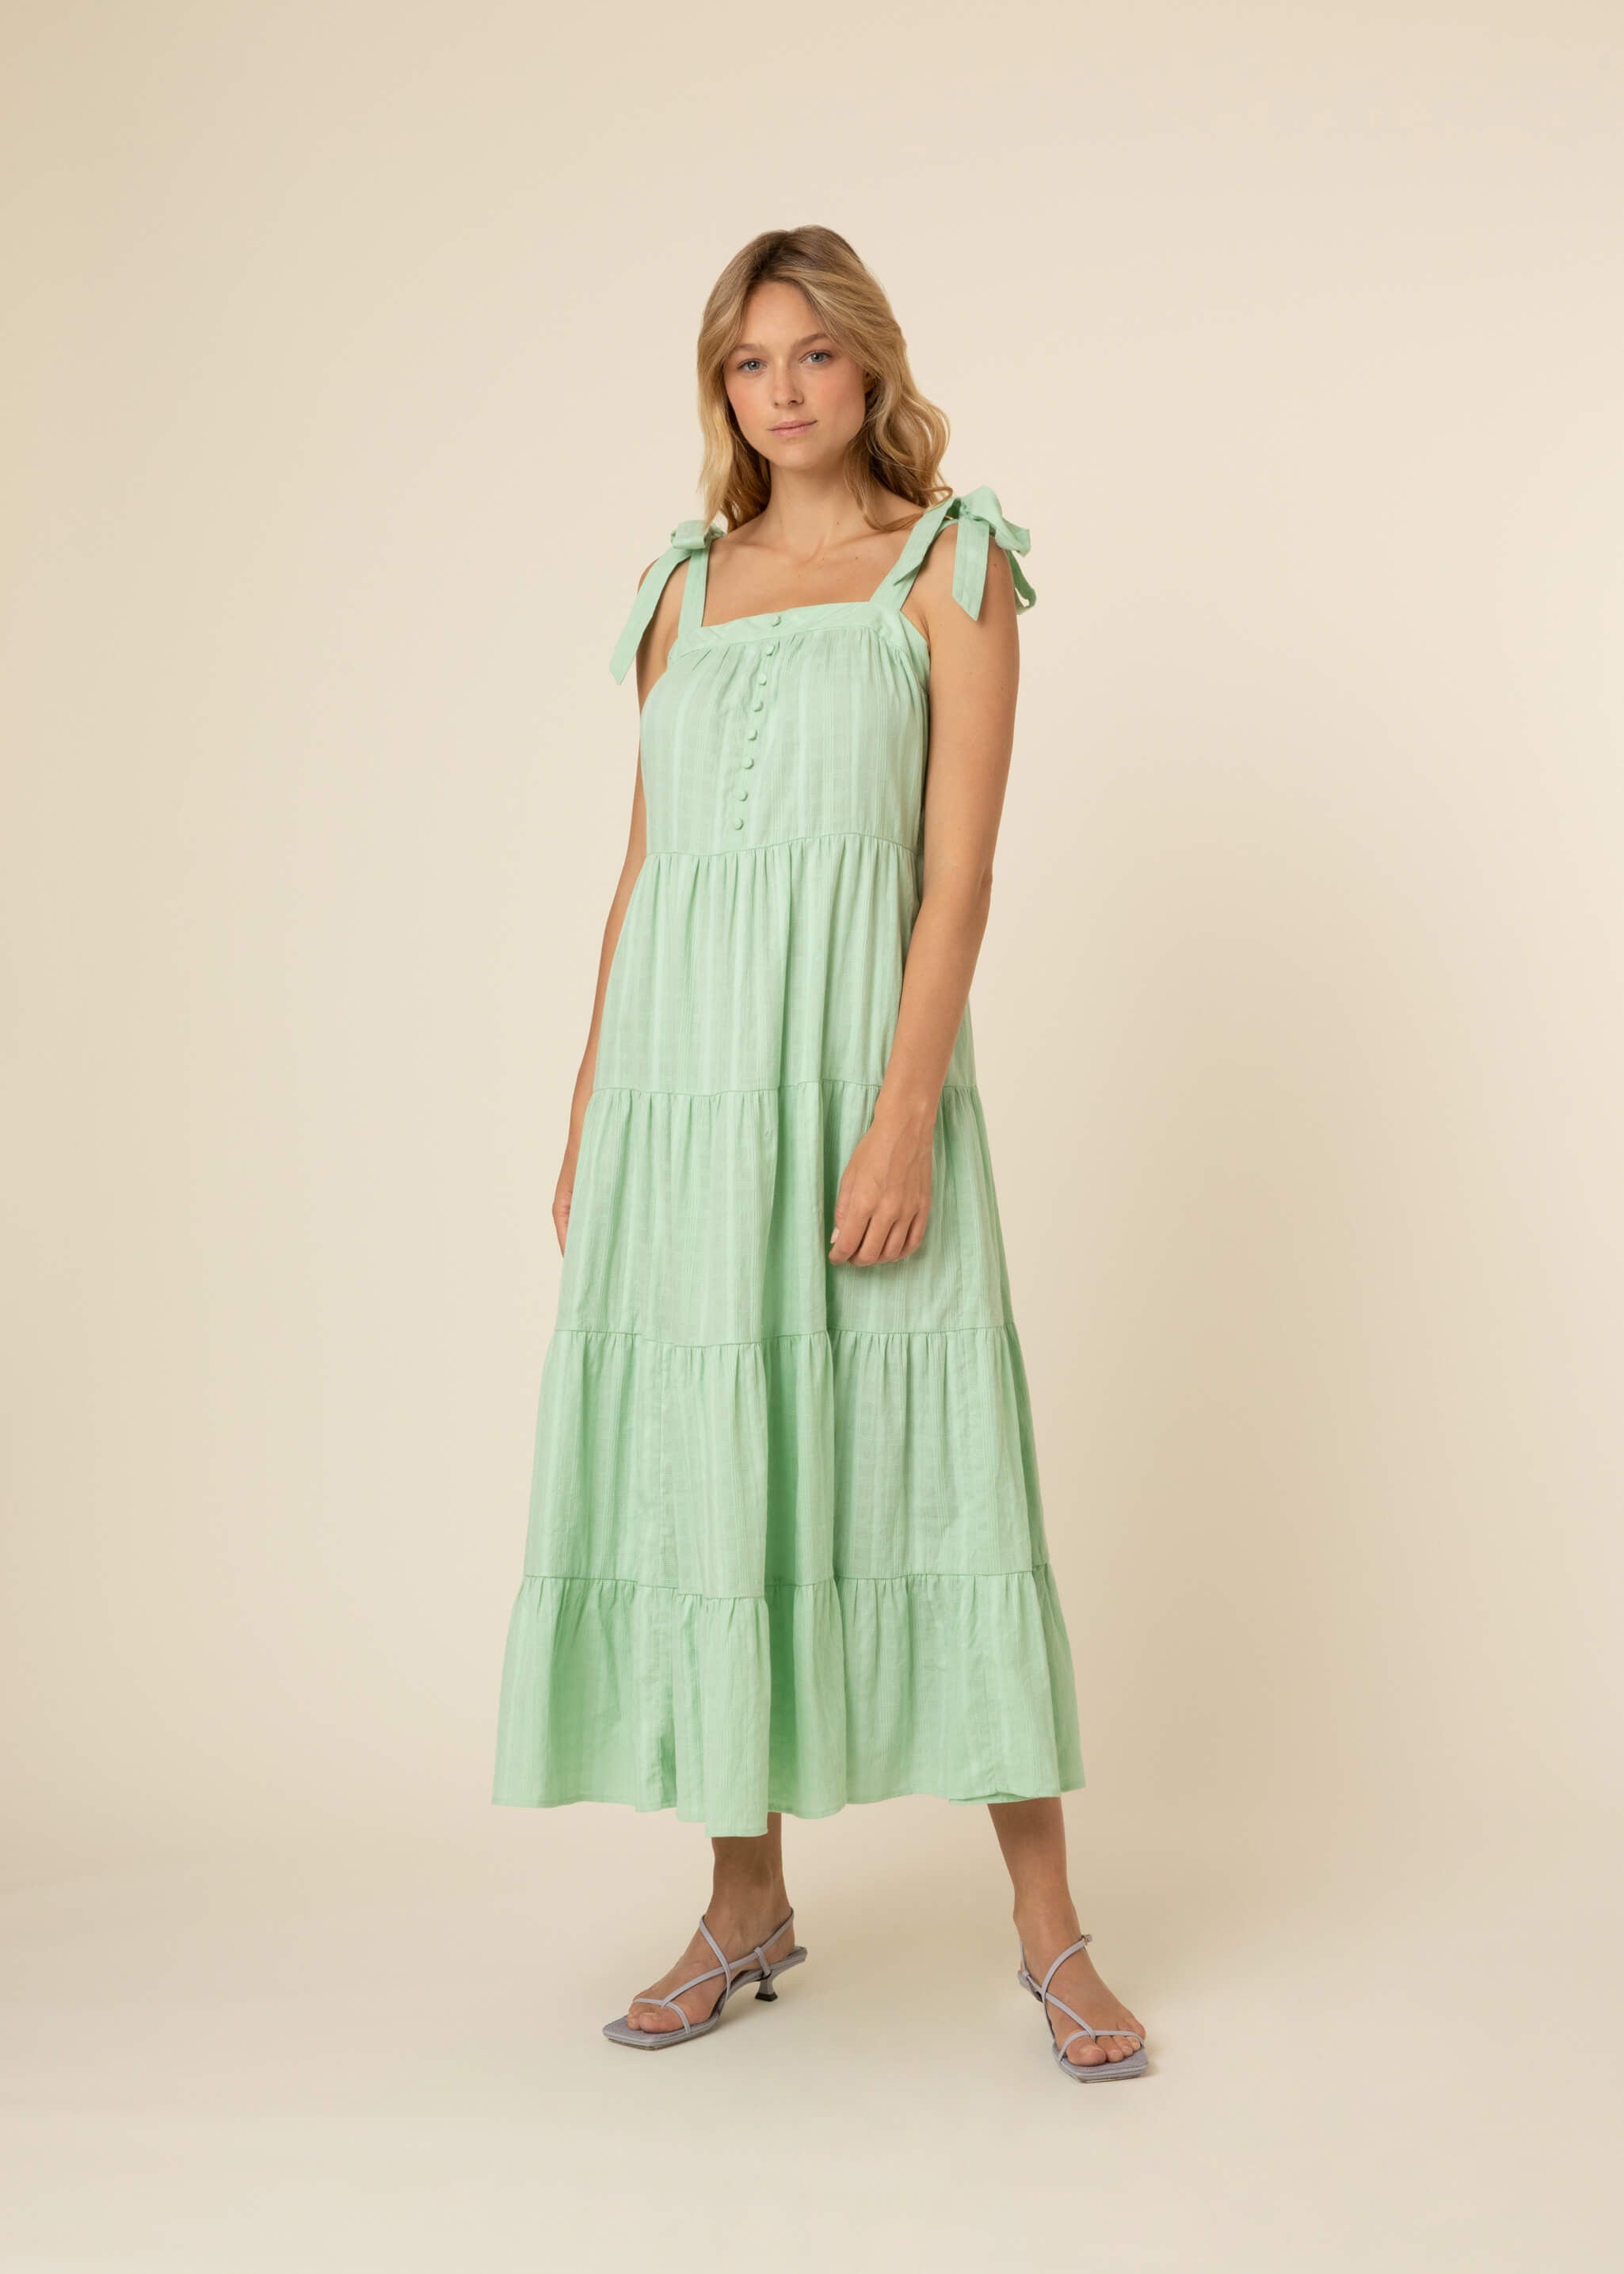 HELENA light green cotton dress